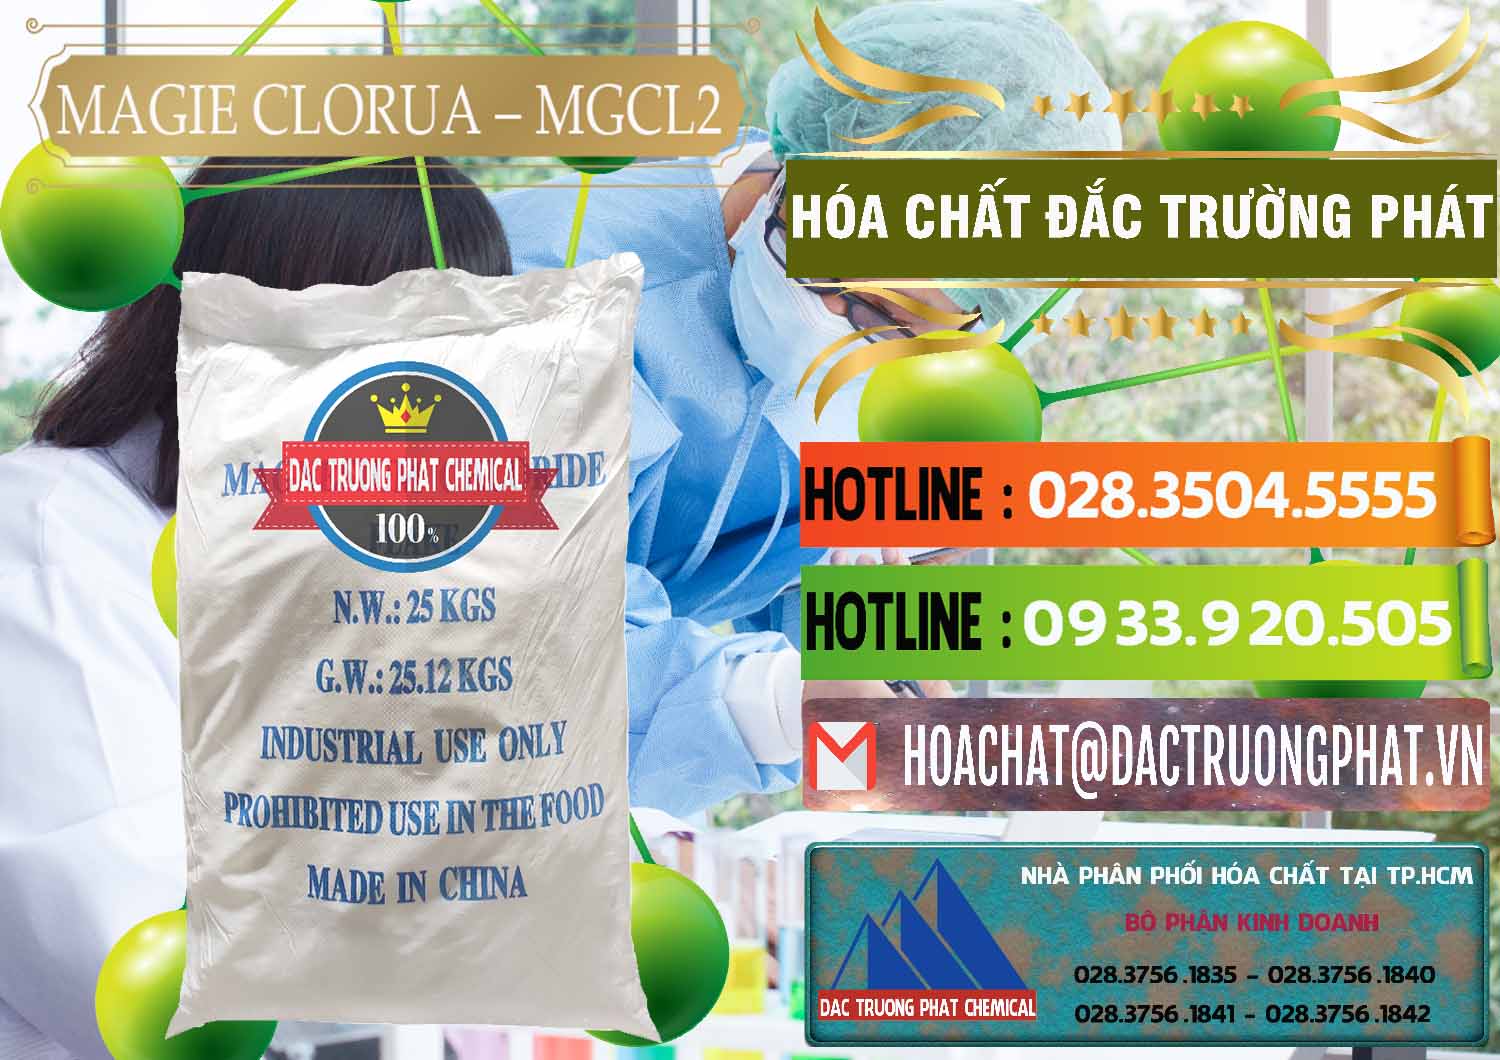 Chuyên nhập khẩu - bán Magie Clorua – MGCL2 96% Dạng Vảy Trung Quốc China - 0091 - Cty phân phối & cung cấp hóa chất tại TP.HCM - cungcaphoachat.com.vn